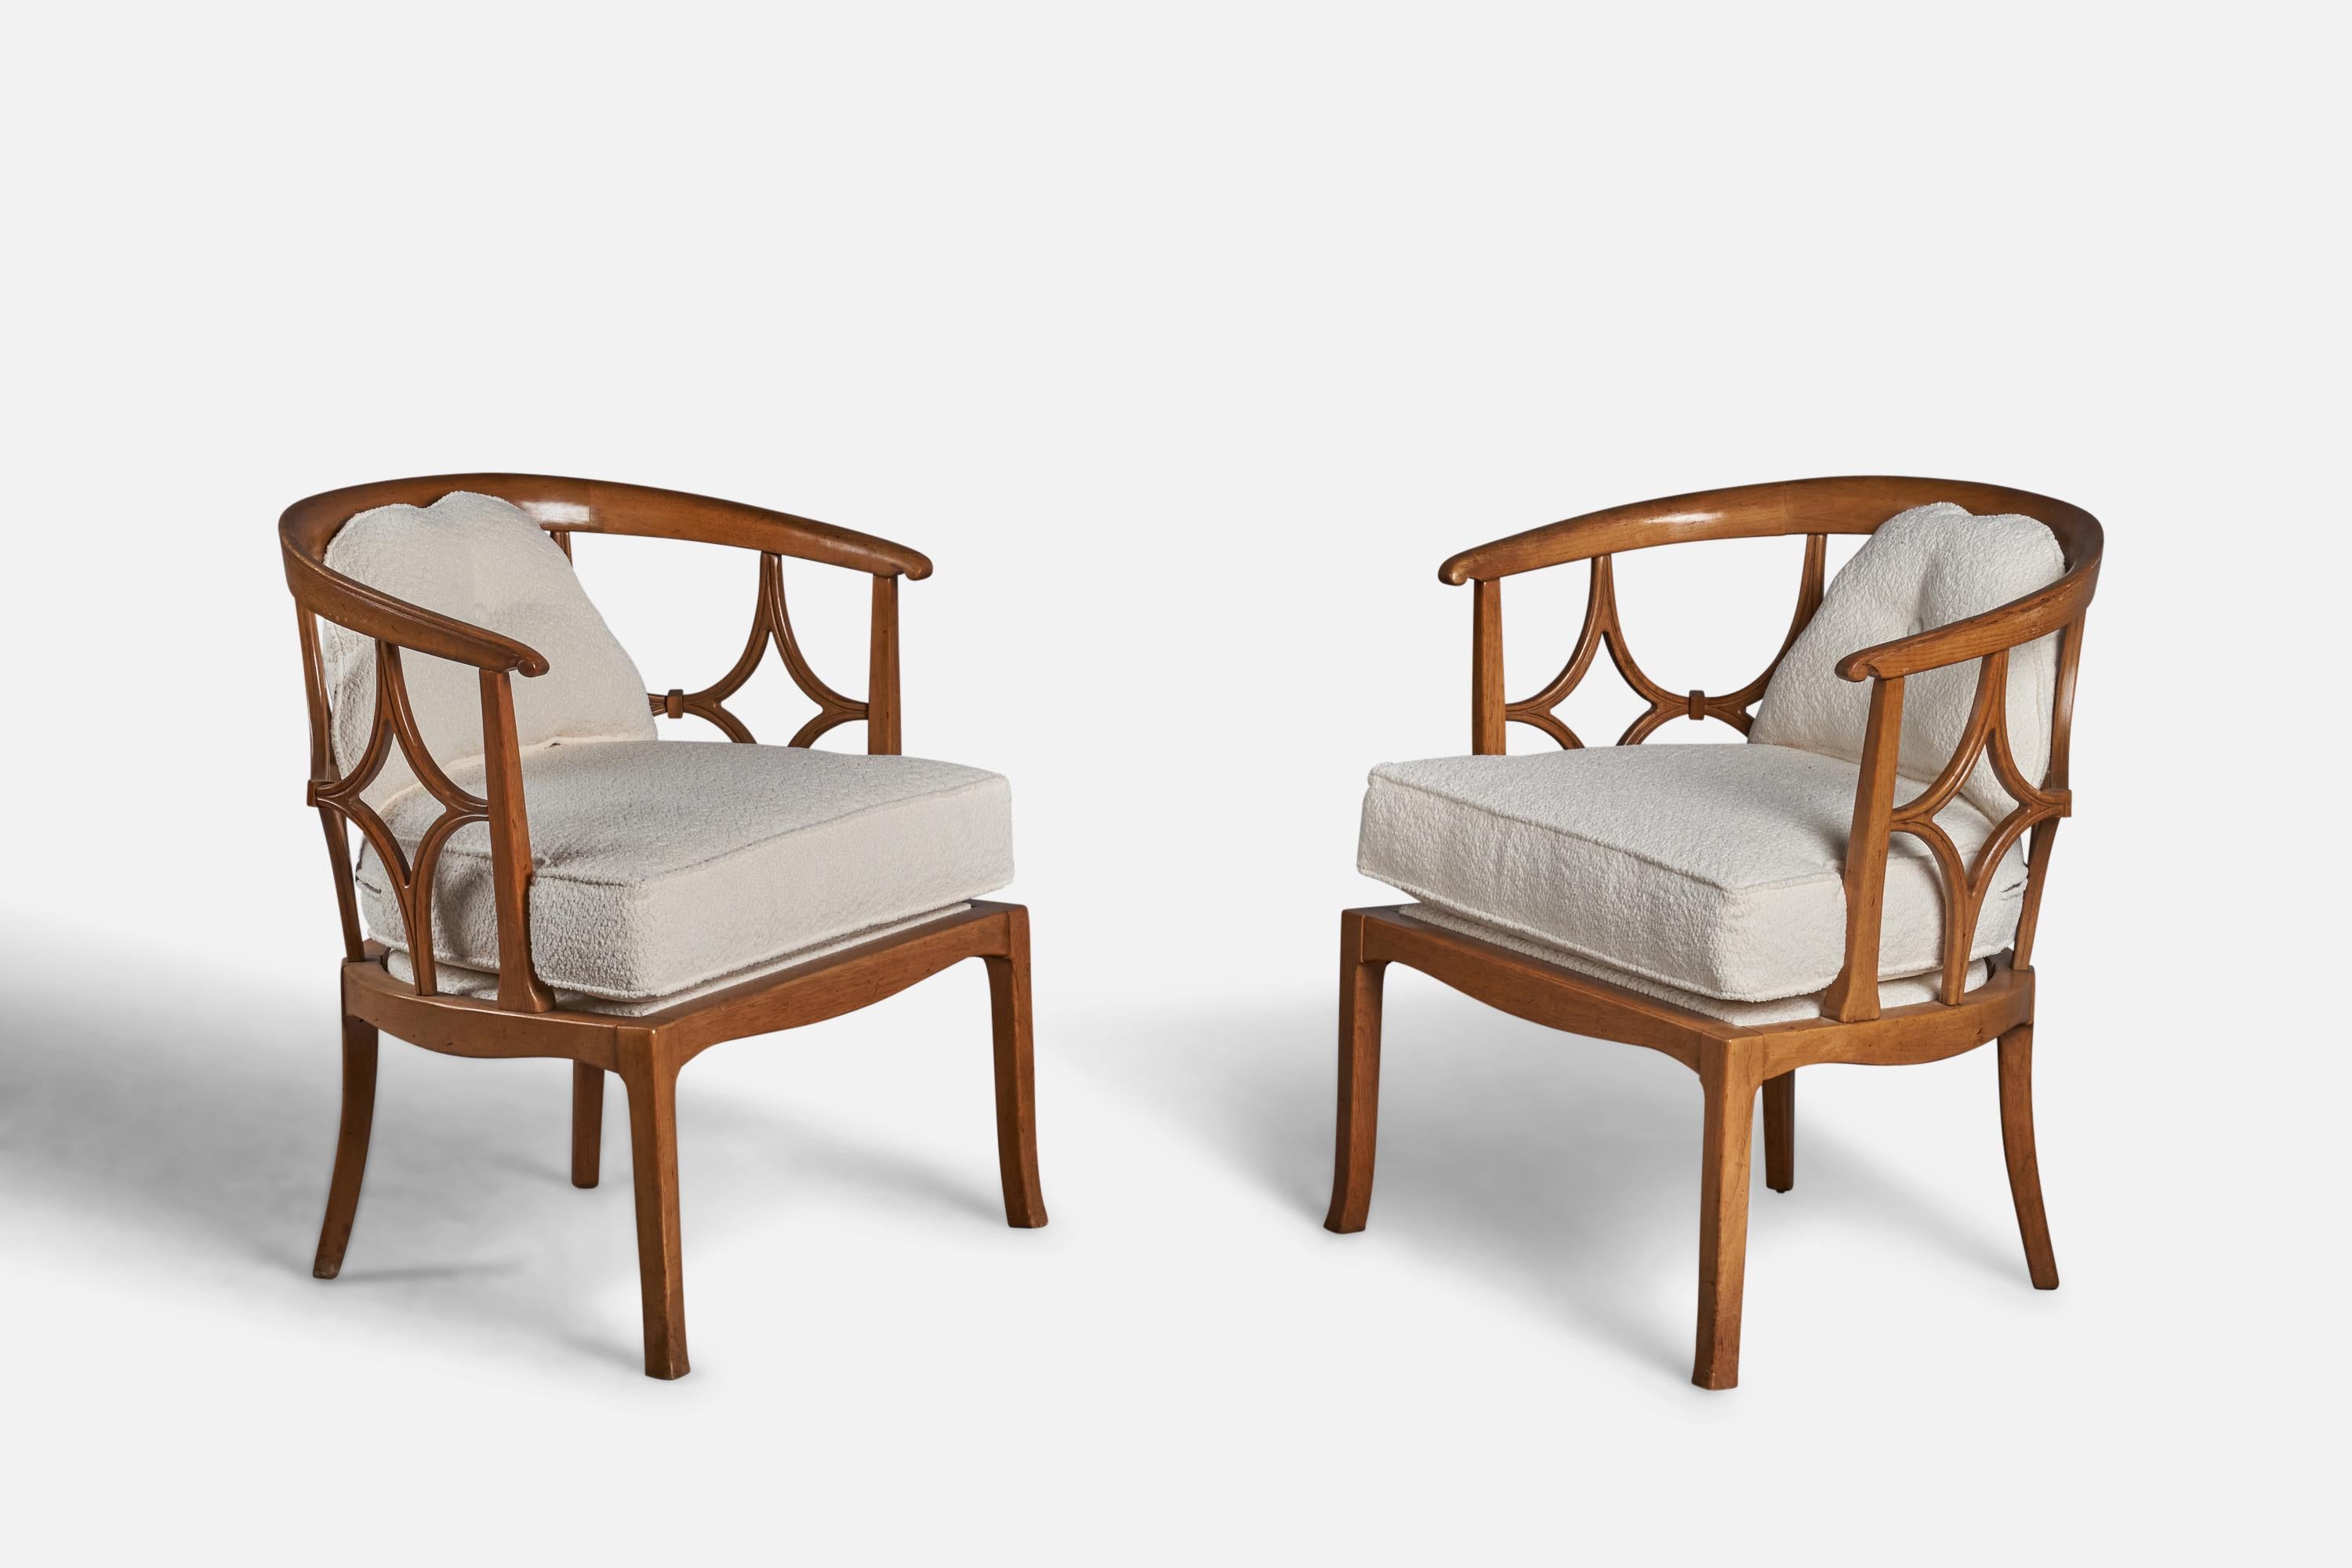 Ein Paar Sessel aus gebeizter Eiche und weißem Bouclé-Stoff, entworfen und hergestellt in den USA, ca. 1940er Jahre.
19